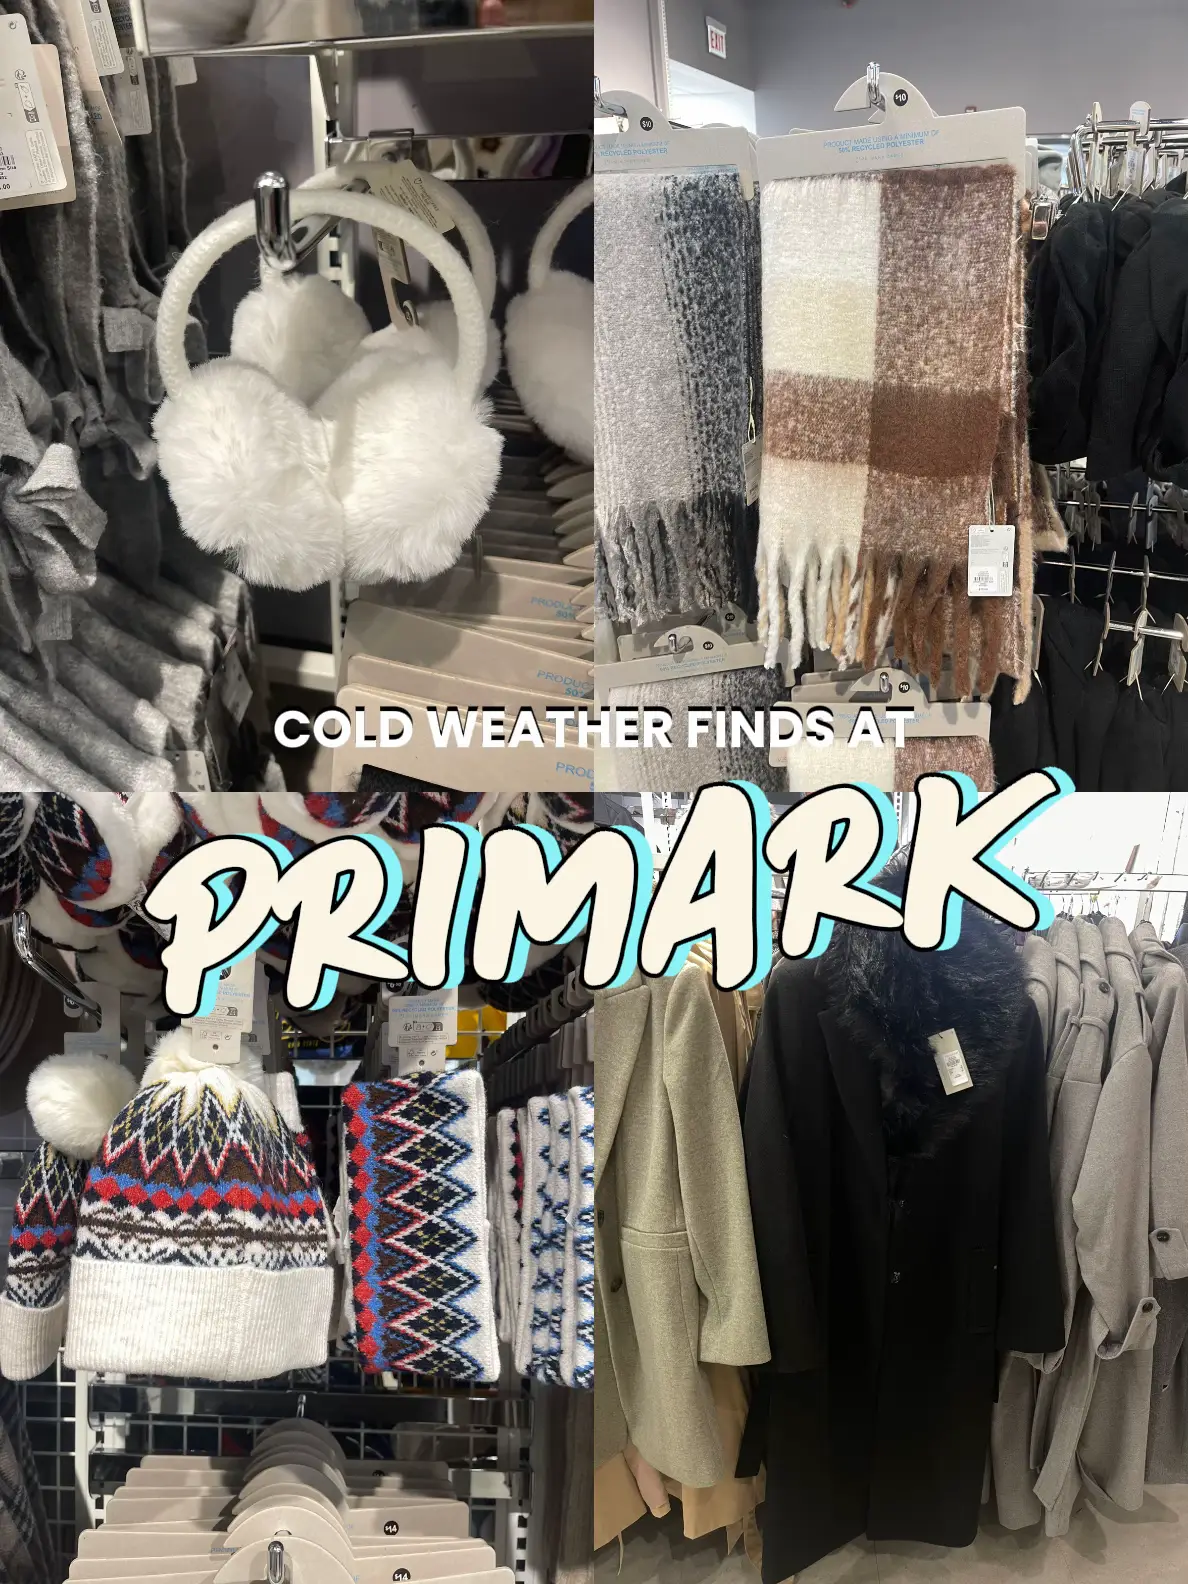 Primark Seamless Underwear Sets have my heart 🫶🏼🫶🏼🫶🏼 #primark x